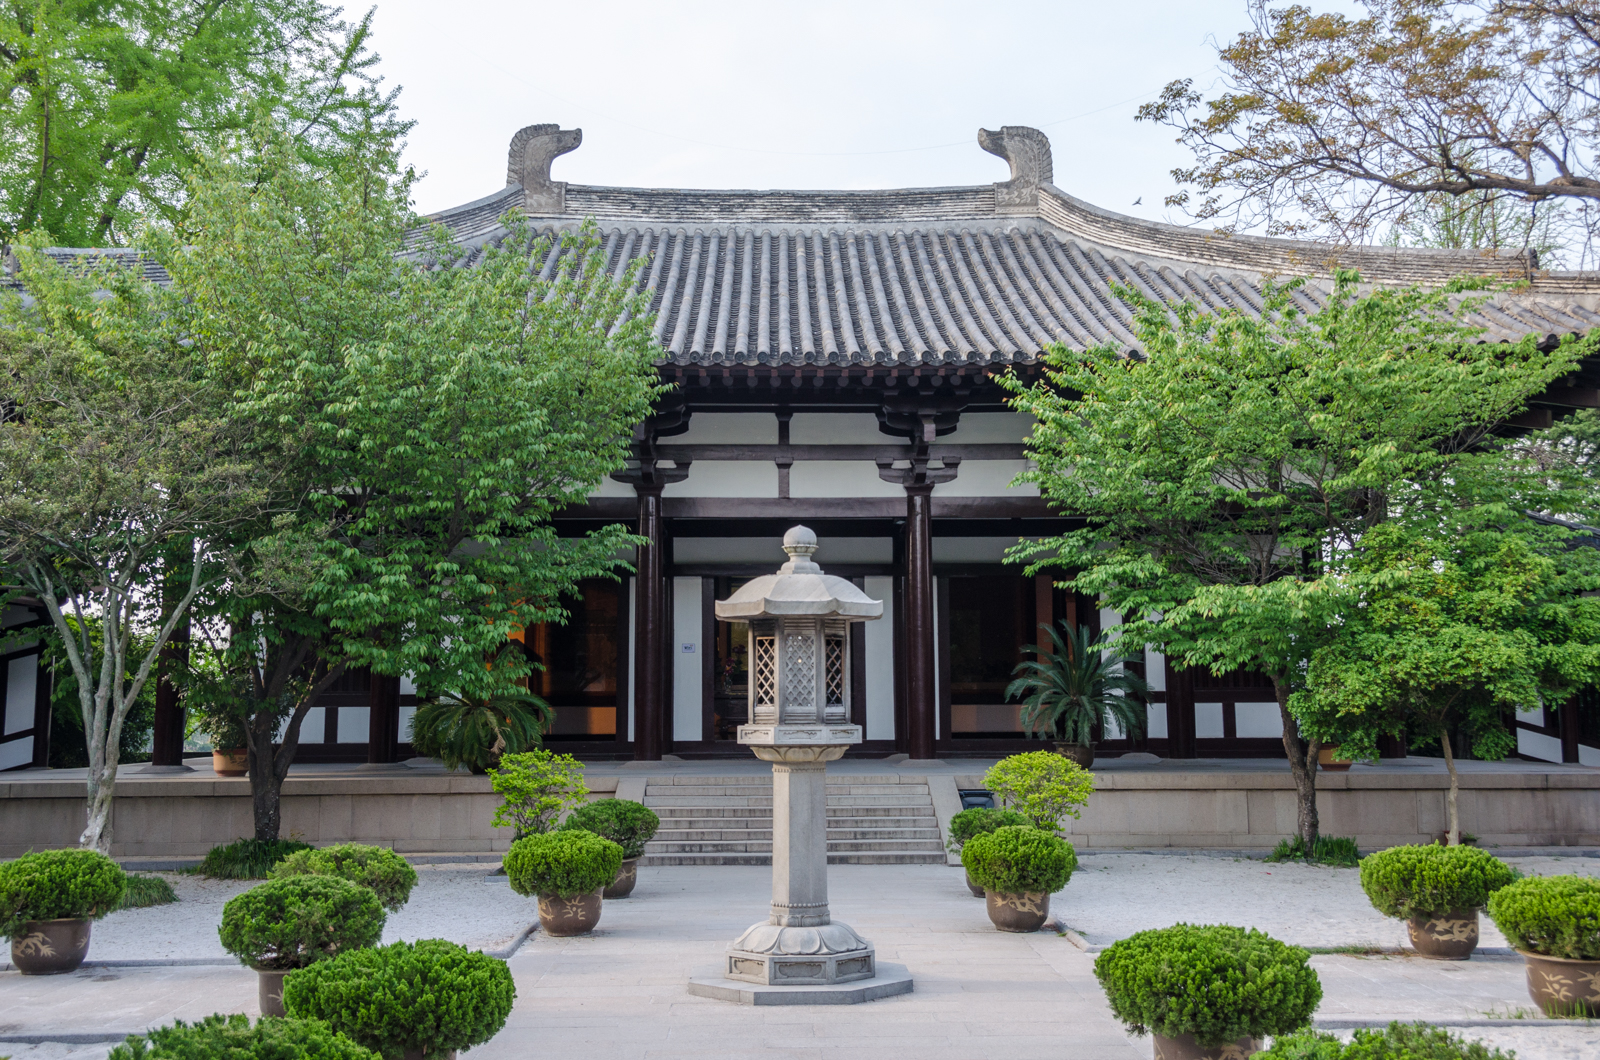 大明寺内有一座鉴真纪念堂,唐朝时期的高僧鉴真是中国和日本文化传播